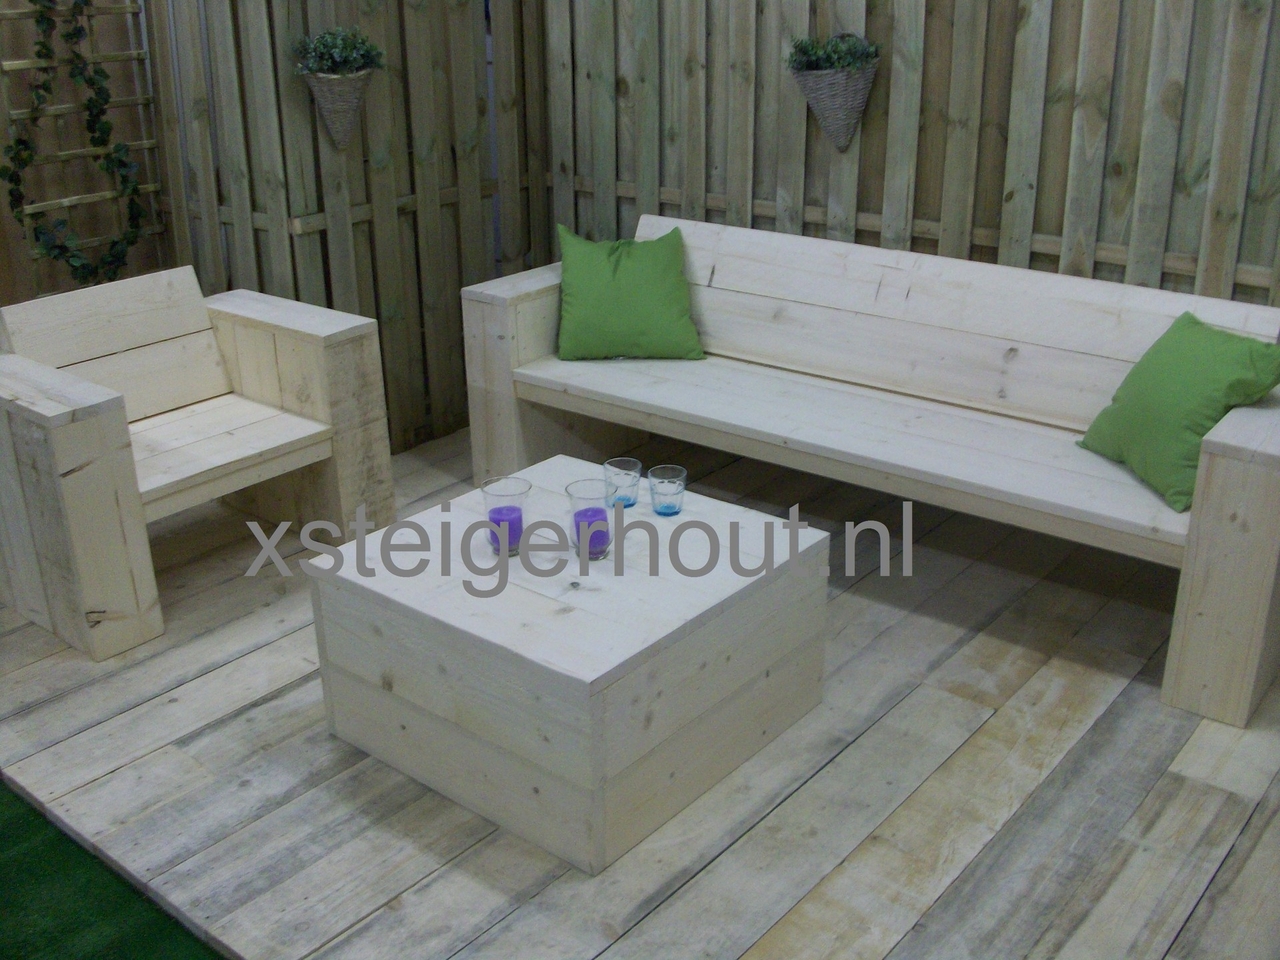 Loungeset bouwpakket steigerhout € 261,- xsteigerhout